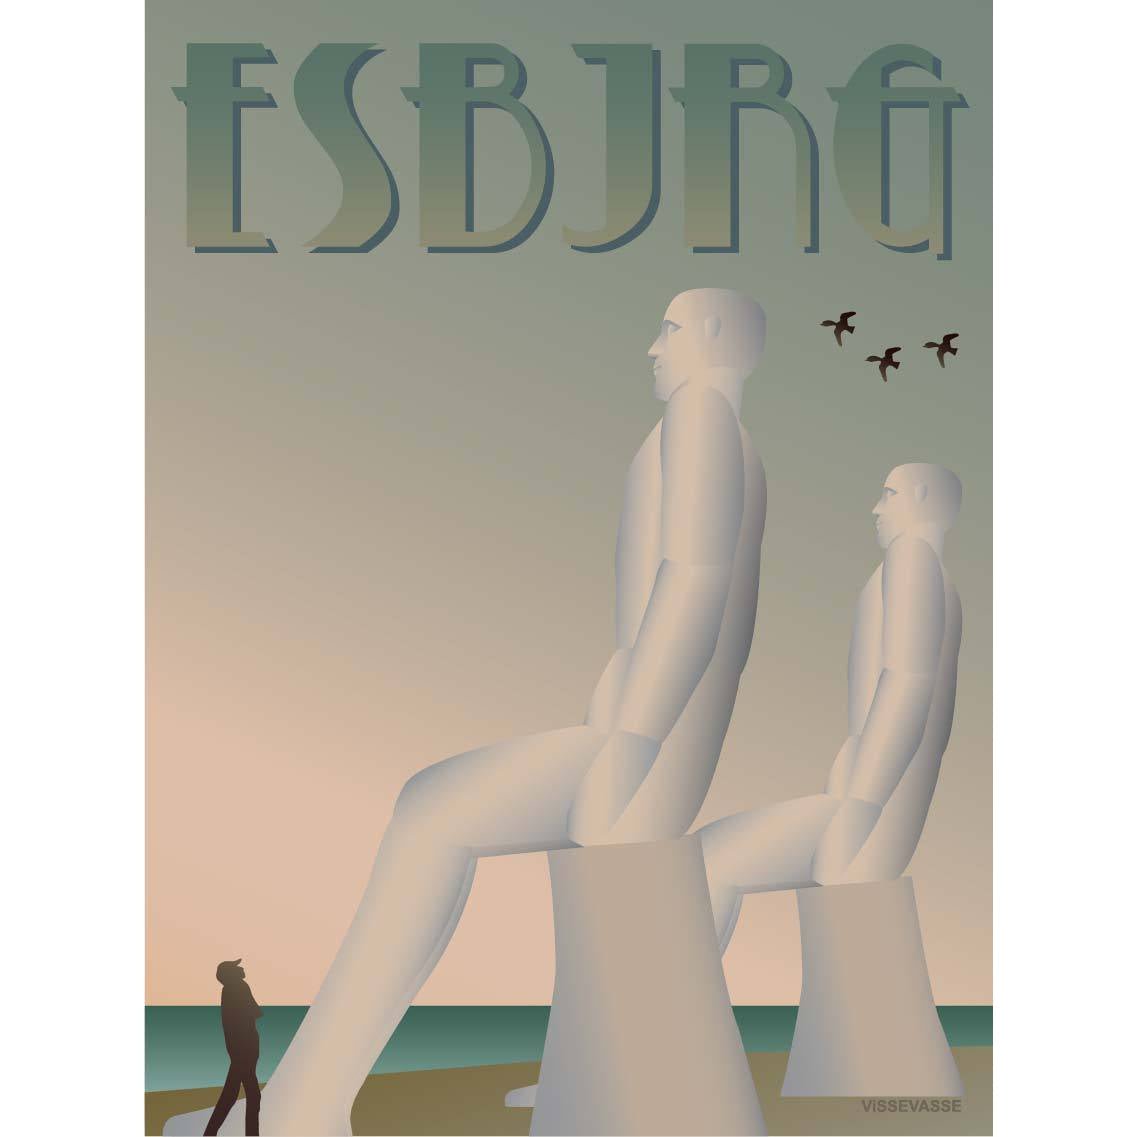 Vissevasse Esbjerg White Men Poster, 15 X21 Cm